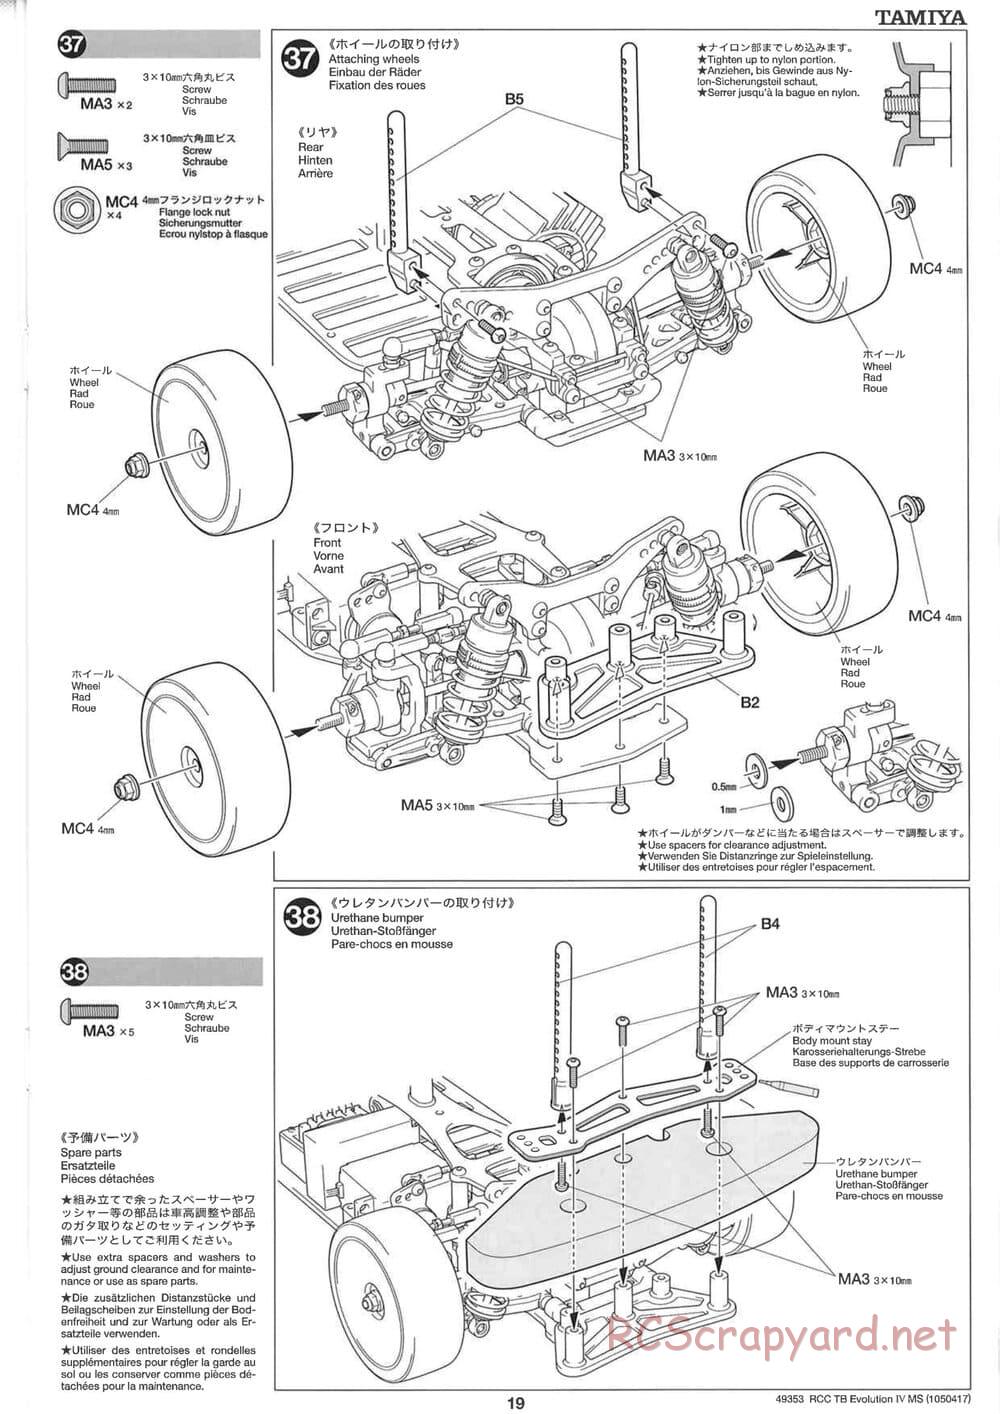 Tamiya - TB Evolution IV MS Chassis - Manual - Page 19